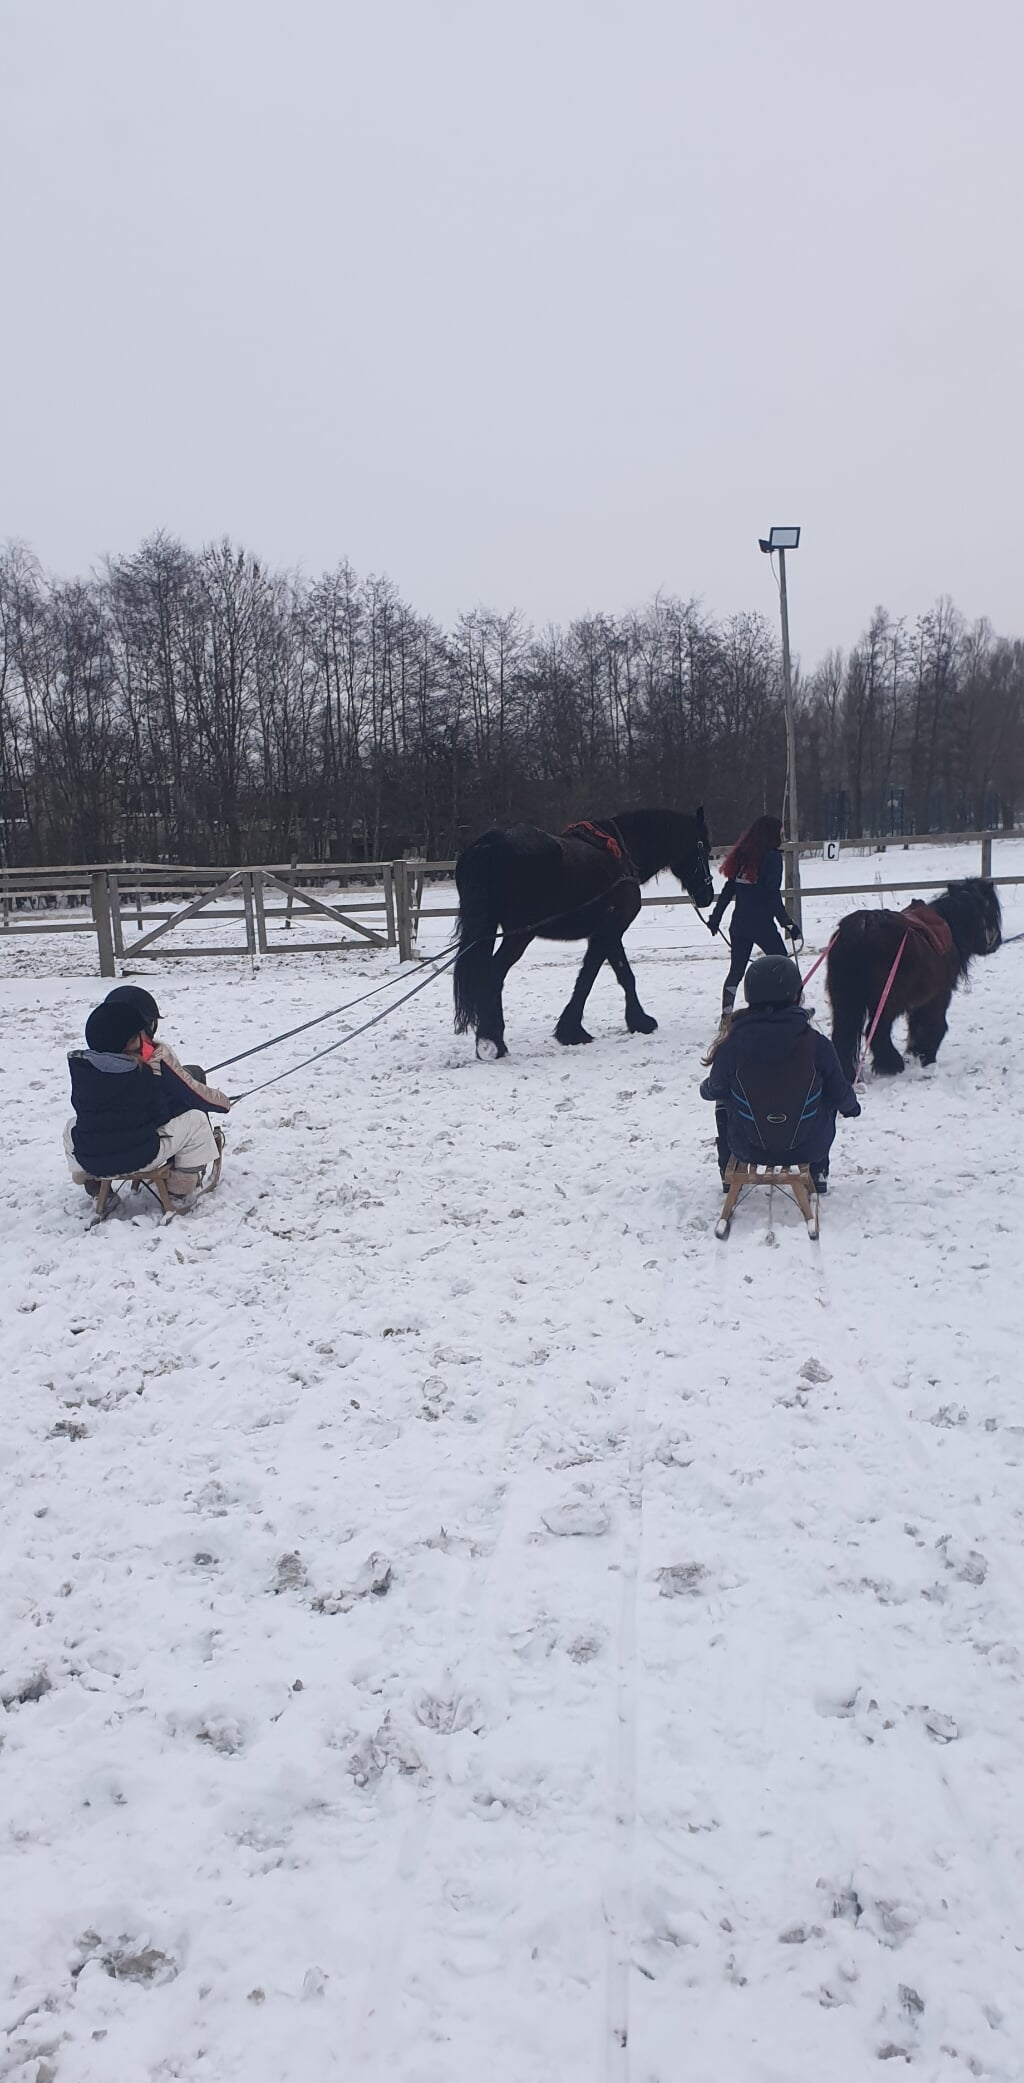 Bij Ponycentrum Leeuwenhoek moest men afgelopen week creatief zijn met alleen een buitenbak. Maar ook daar werd ook genoten van het winterweer. De paarden stonden in de sneeuw op het weiland, en er werd onder andere gesleed achter de paarden. | Foto Maxine Arnst